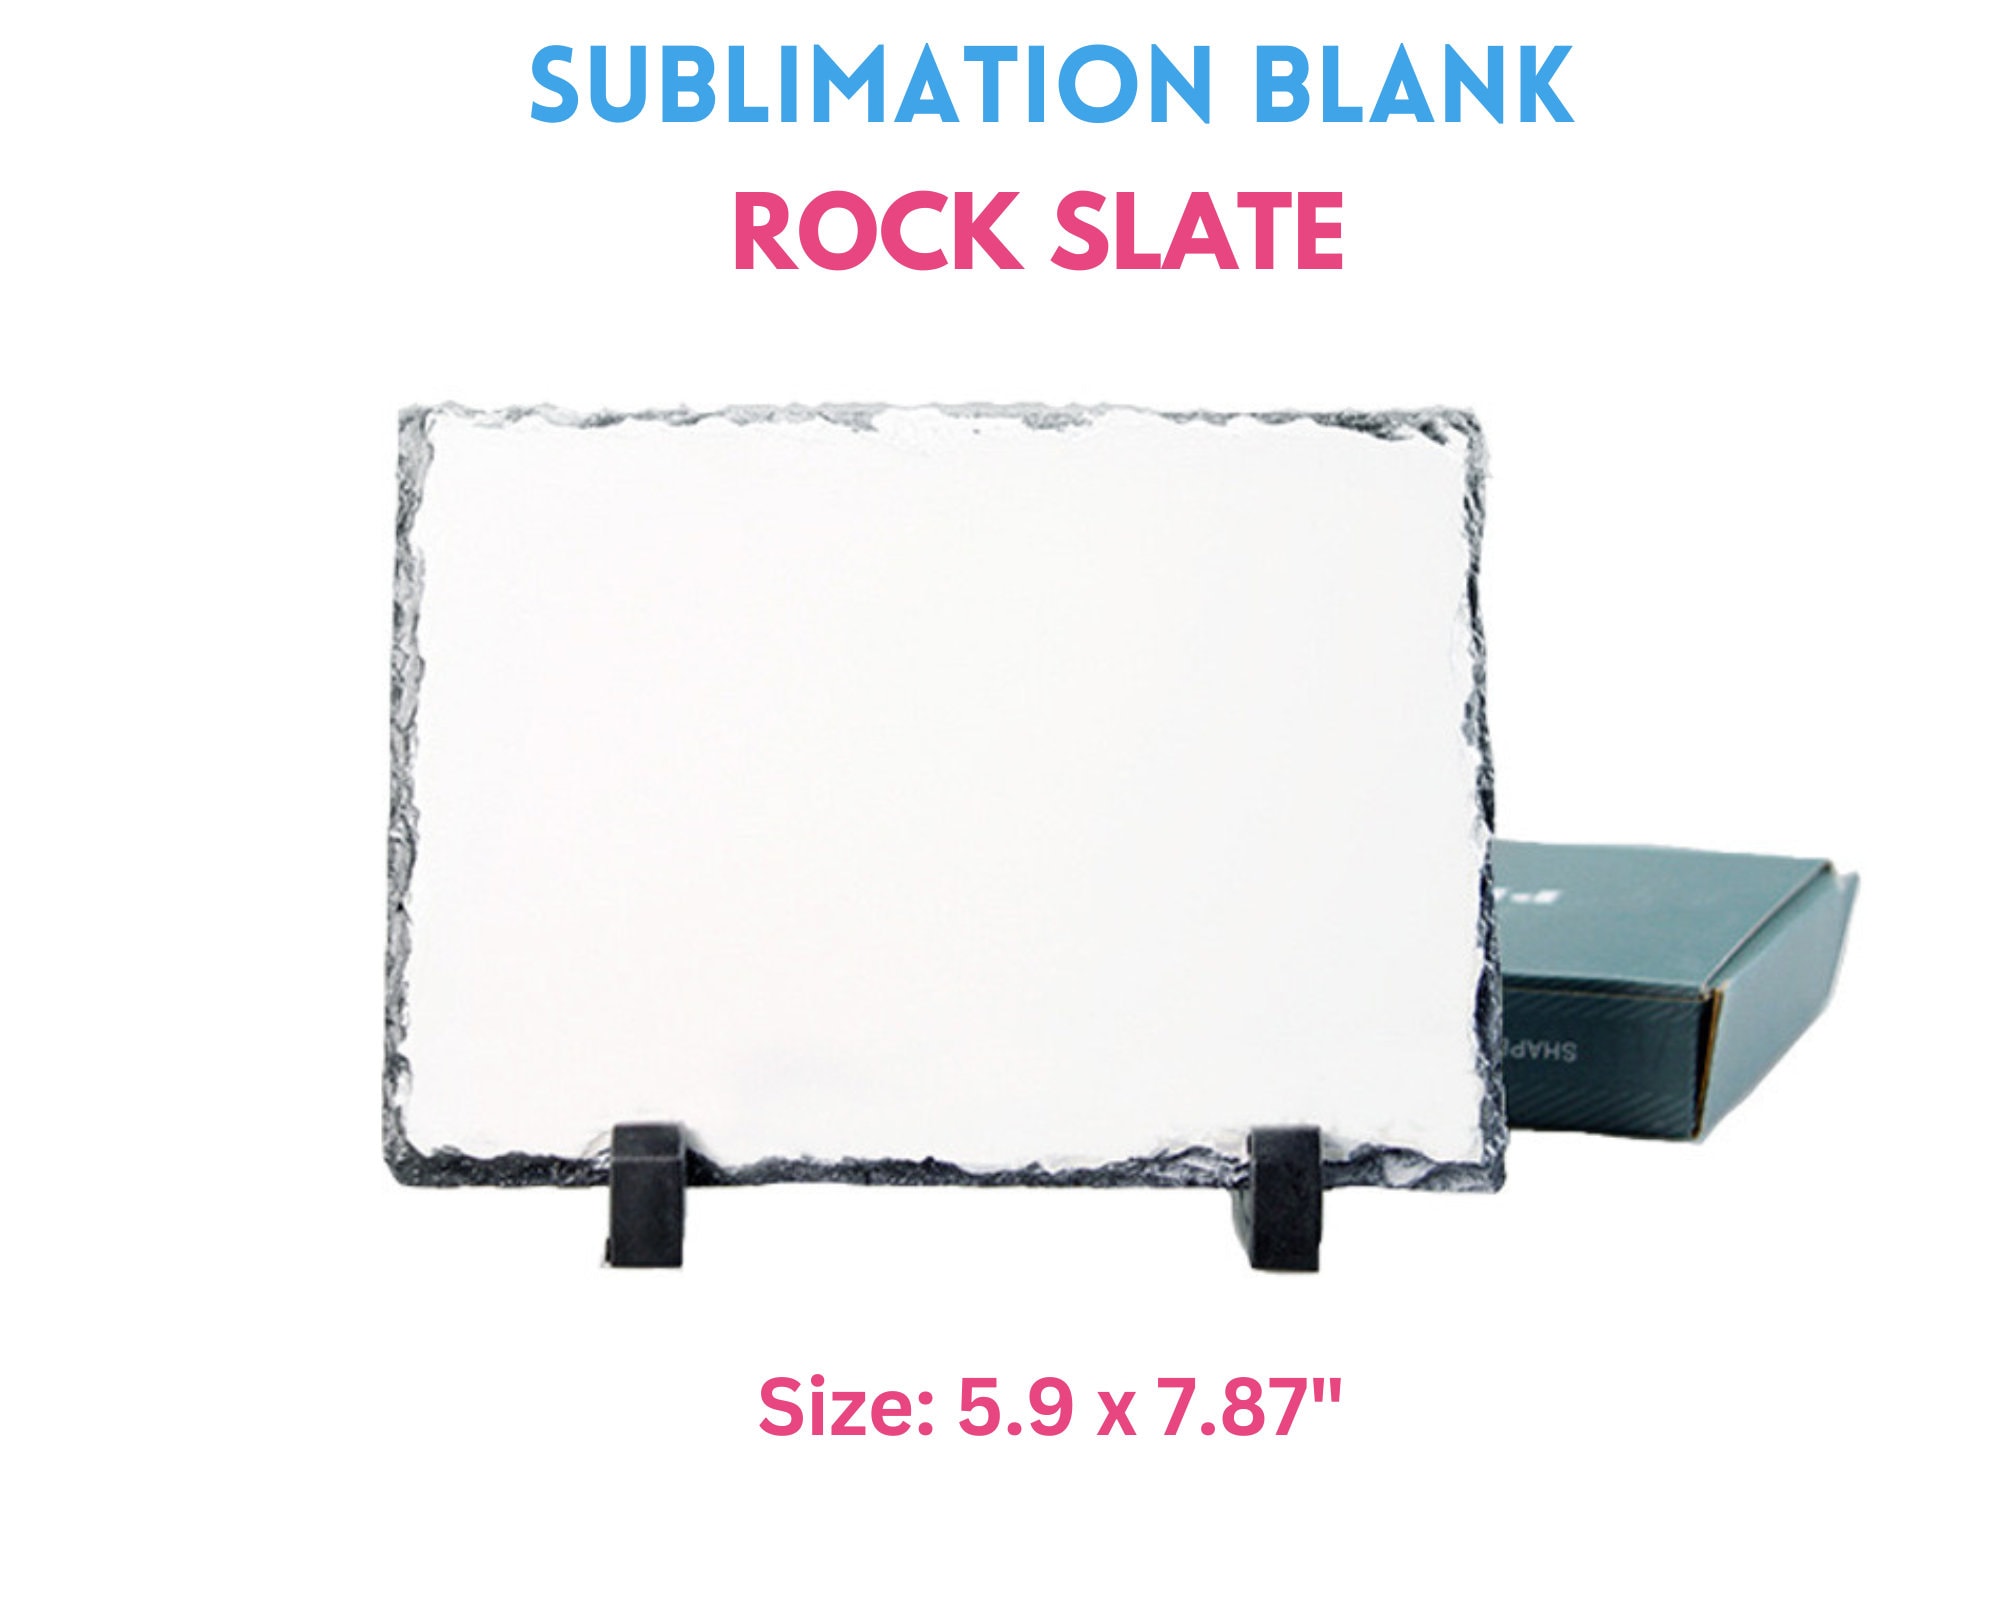 11.5L X .25W X 7.5H Photo Slate Rock Sublimation Plaque 